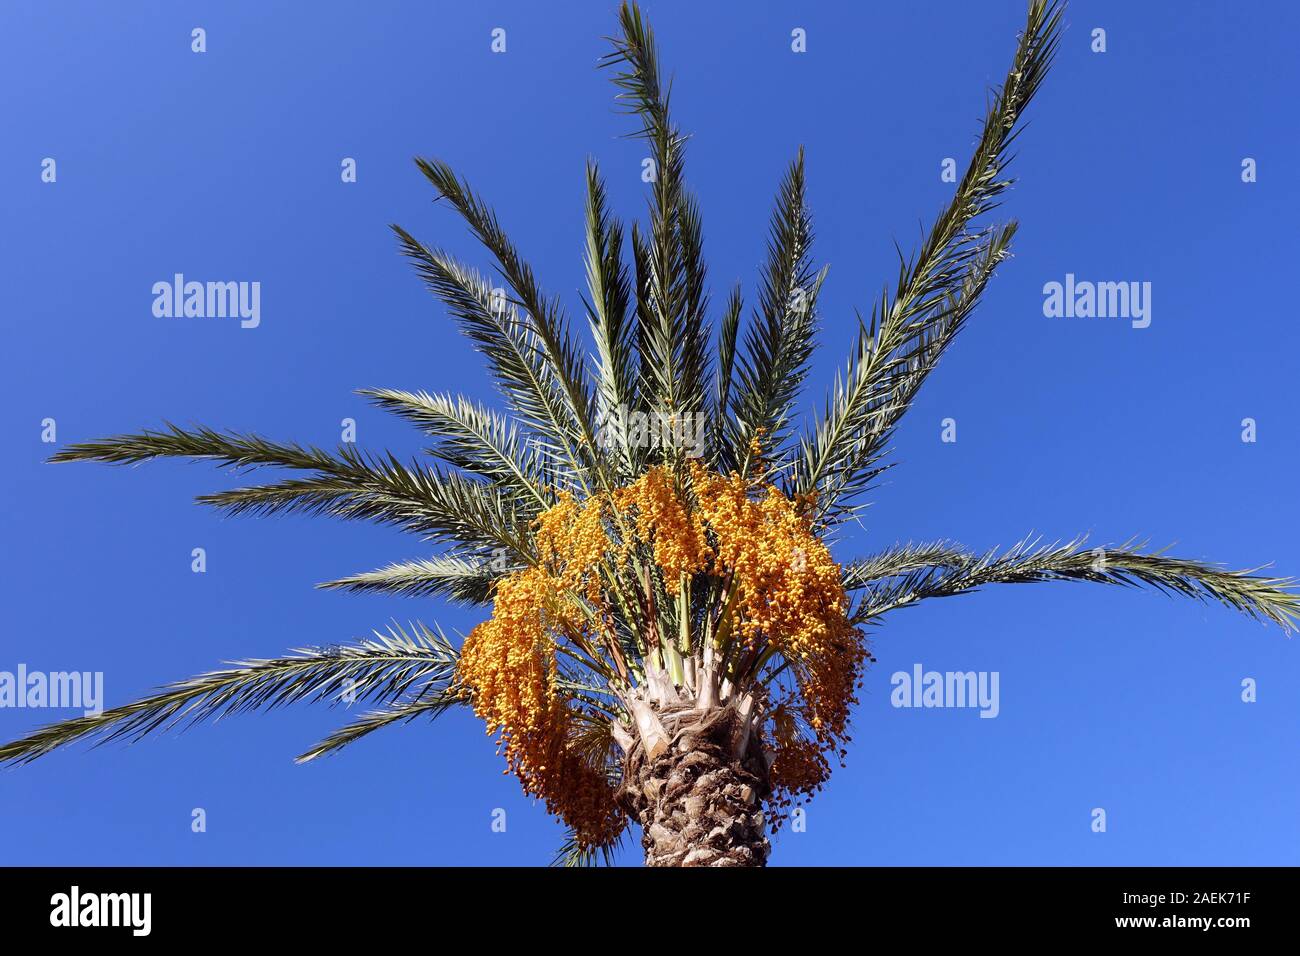 Baumkrone einer Dattelpalme mit leuchtend gelben Früchten, Bafra, Türkische Republik Nordzypern Stock Photo